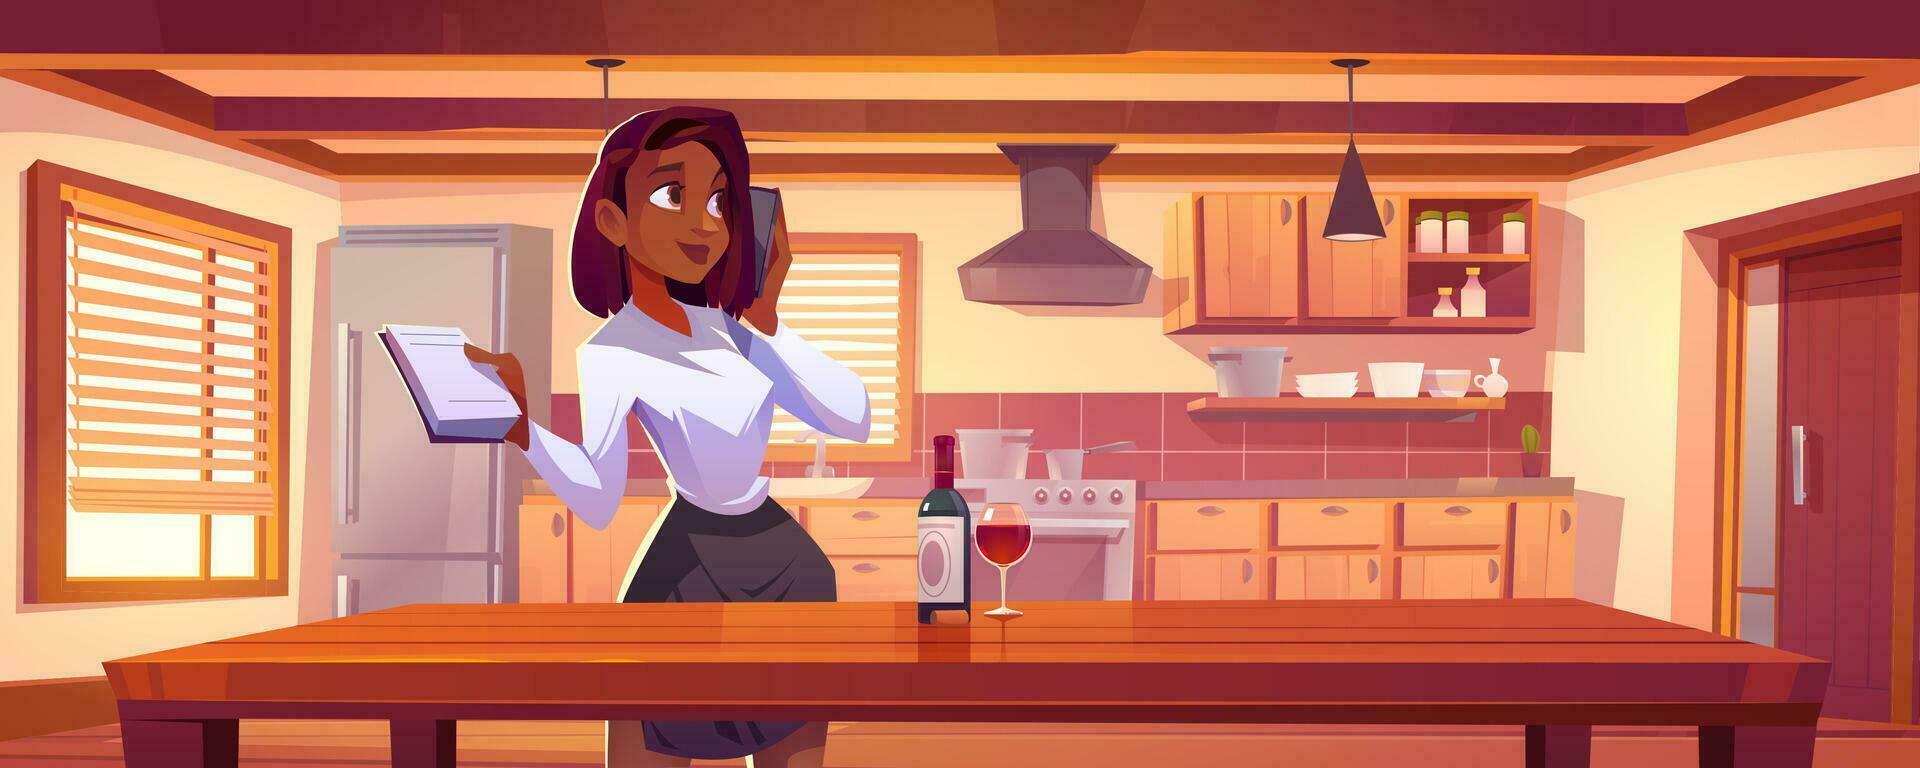 schwarz Frau Stehen in der Nähe von Küche Tabelle Hintergrund vektor